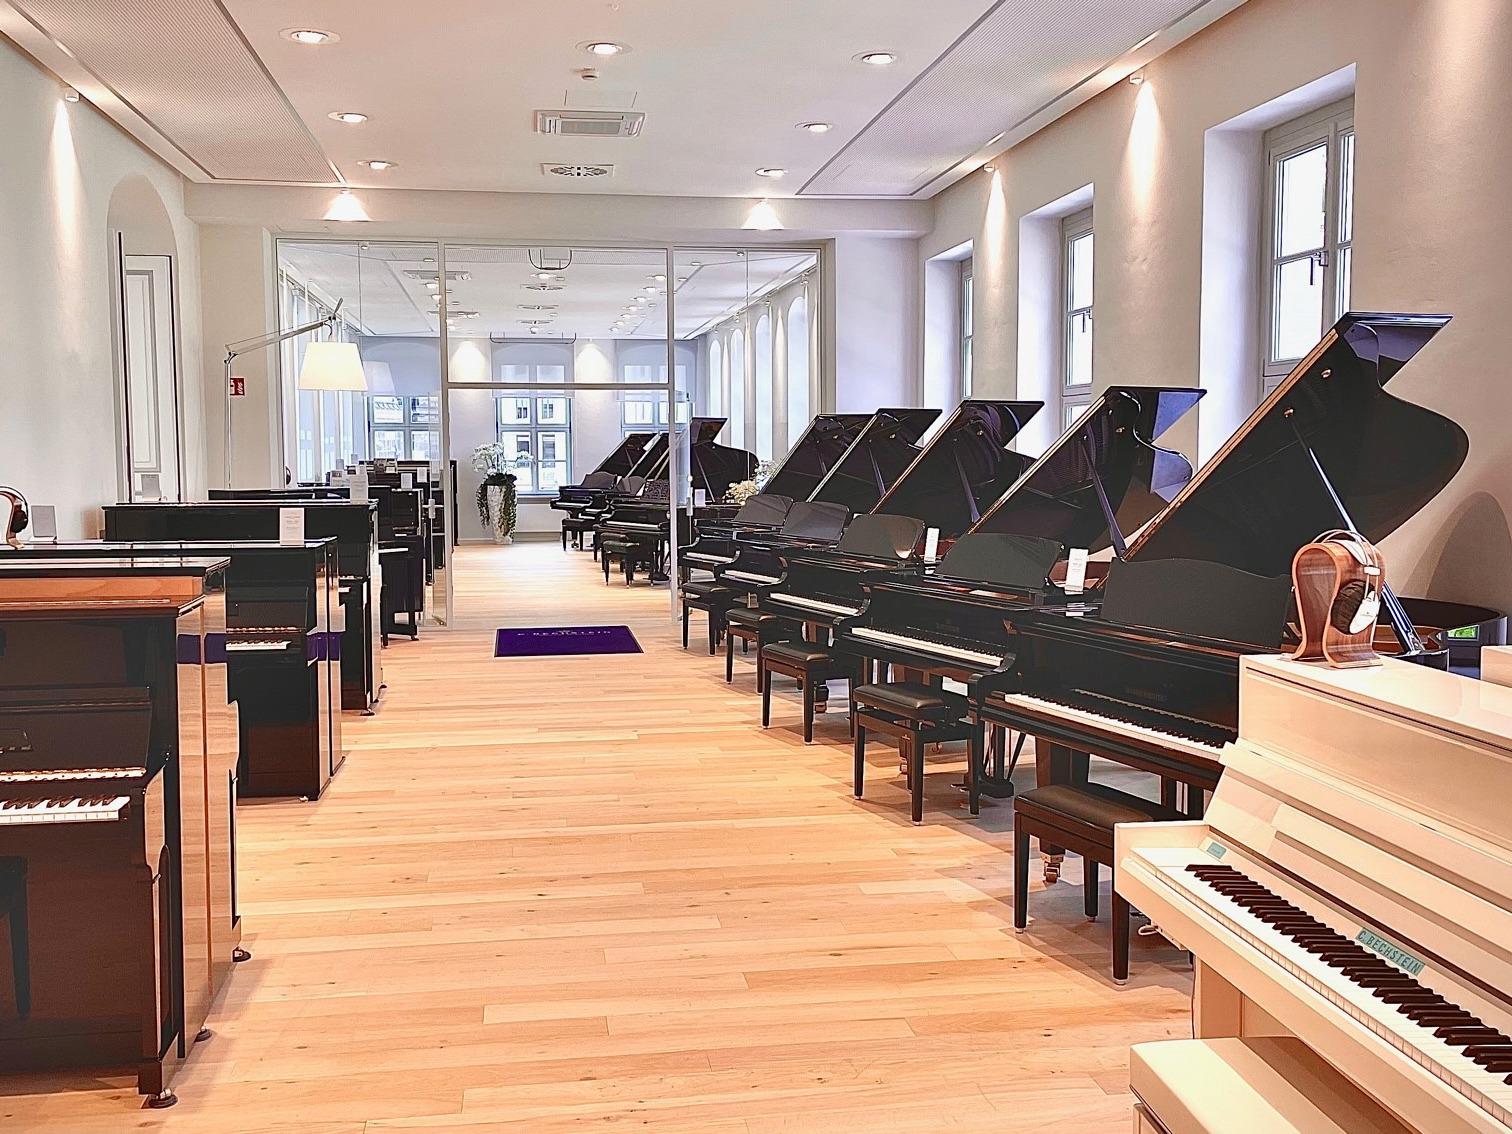 Klavierausstellung (Präsentationsraum) Nordflügel des C. Bechstein Centrum Dresden